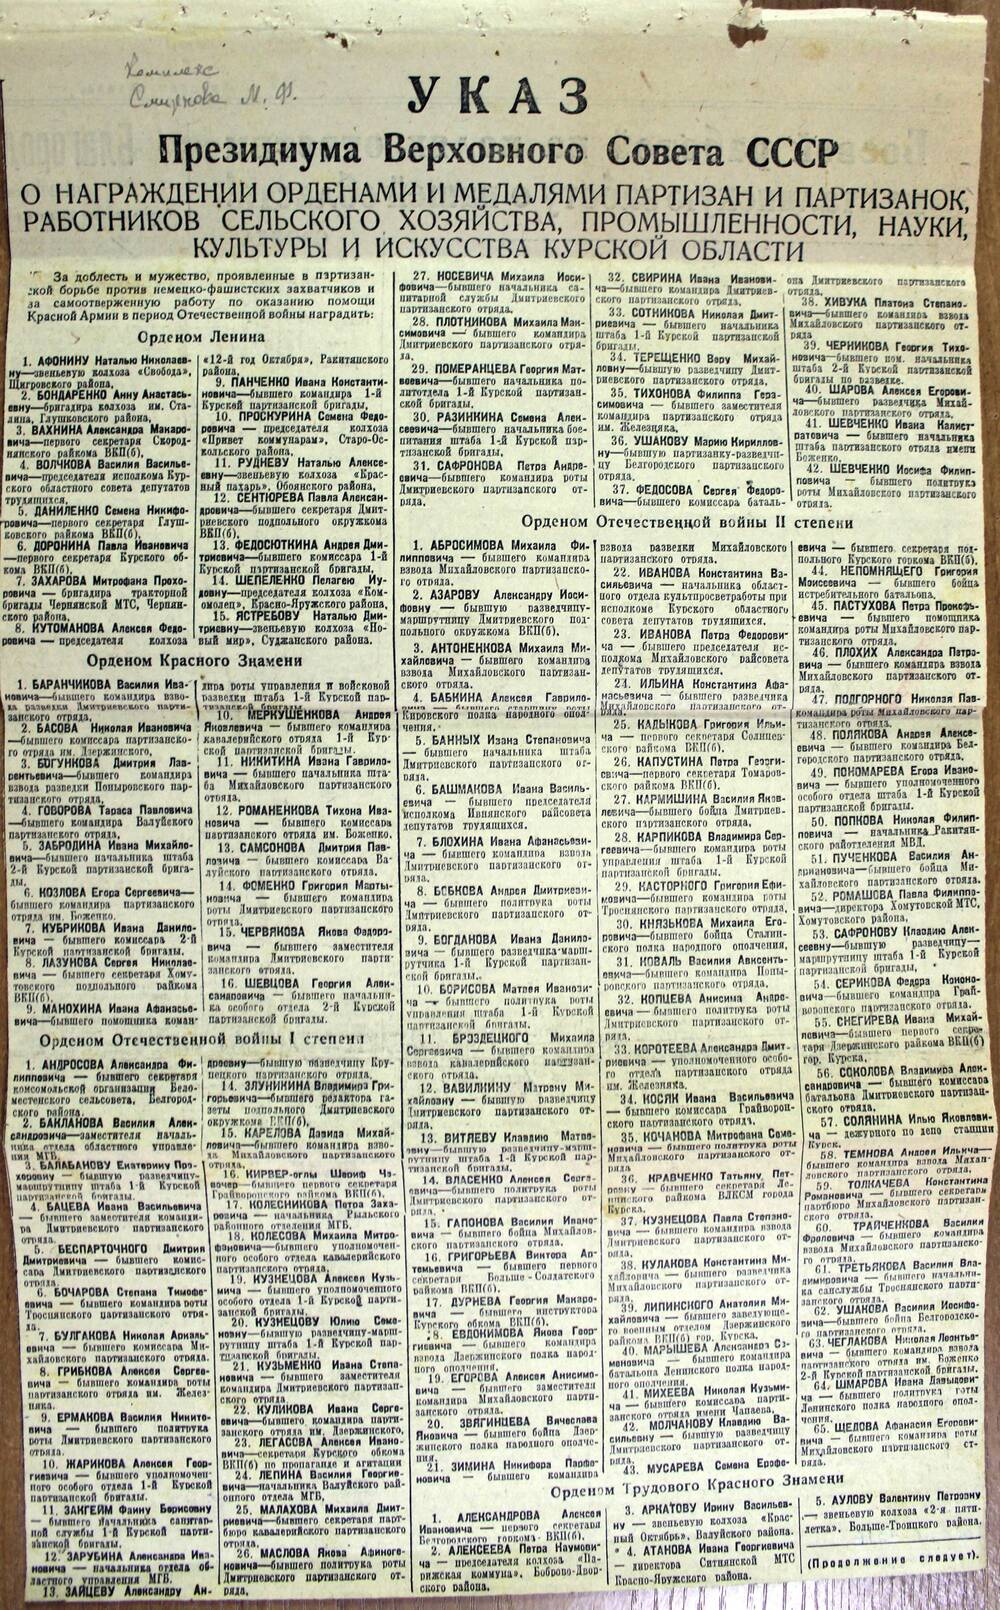 Вырезка из газеты «Курская правда» с публикацией Указа Президиума Верховного Совета СССР